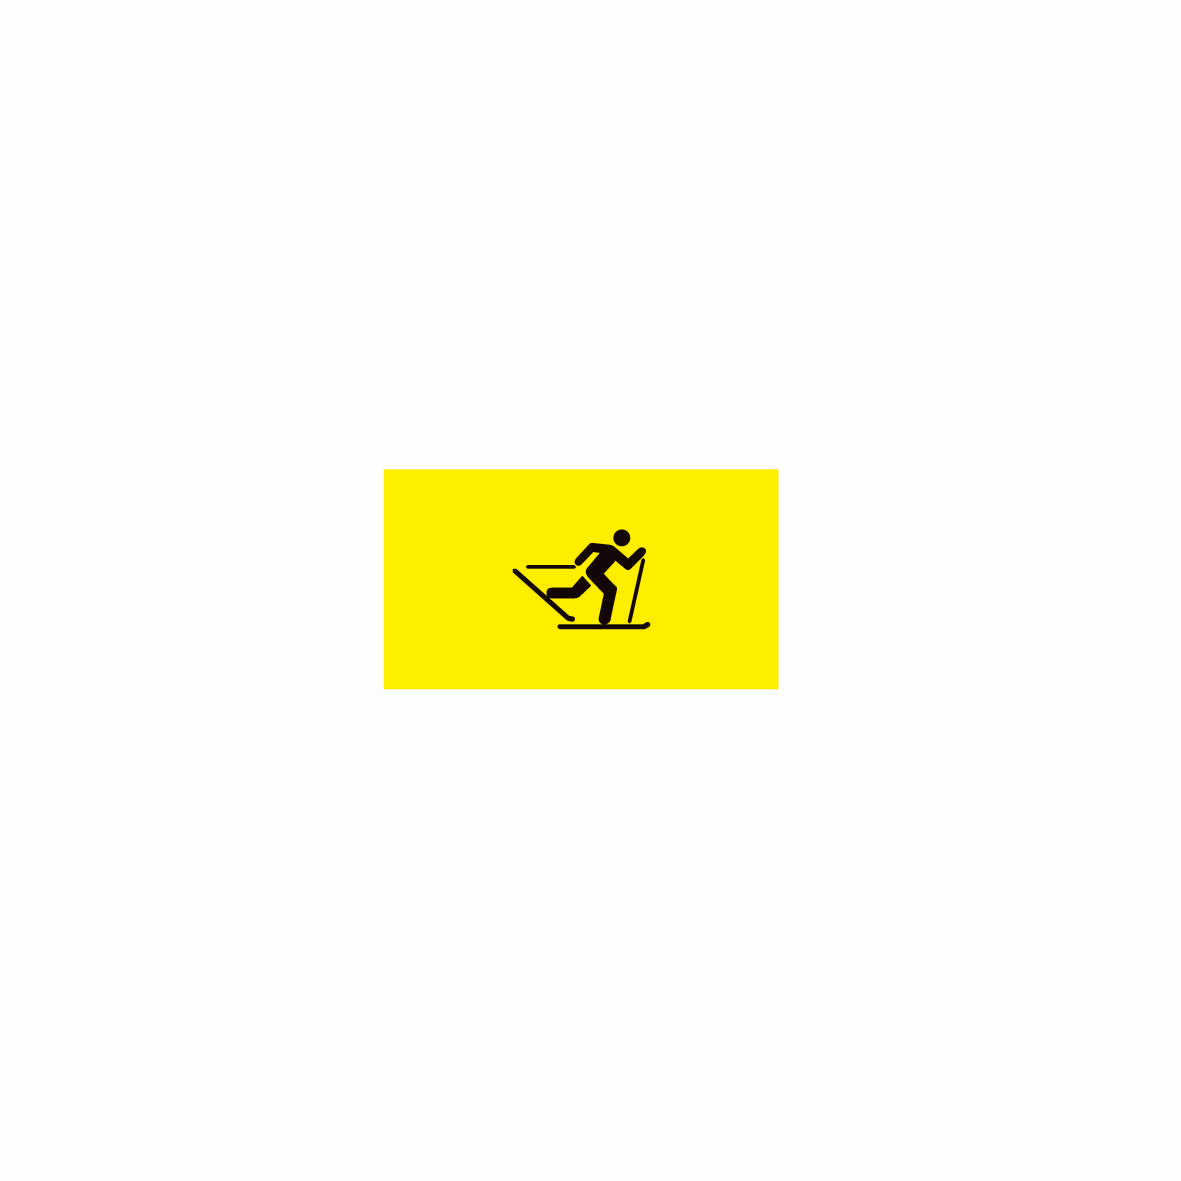 SKUS Gefahrensignal, 1.0013, fluoreszierend gelb, Logo Langläufer, 40/20 cm, Alu Composite 3 mm